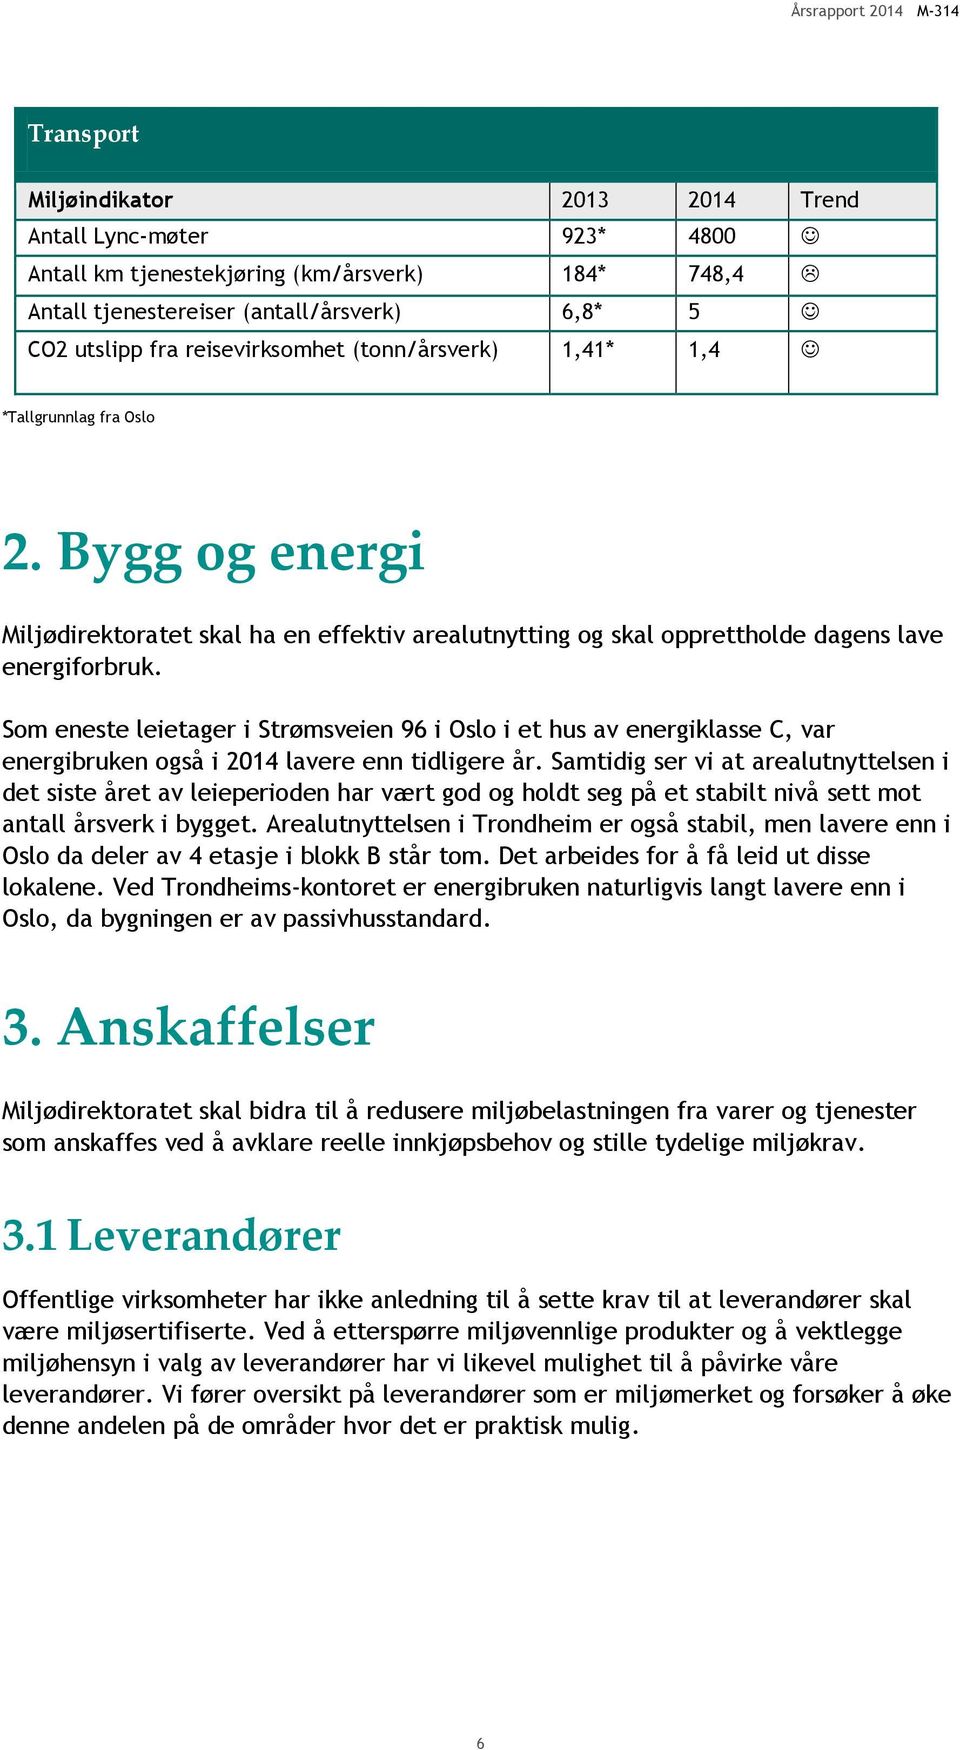 Som eneste leietager i Strømsveien 96 i Oslo i et hus av energiklasse C, var energibruken også i 2014 lavere enn tidligere år.